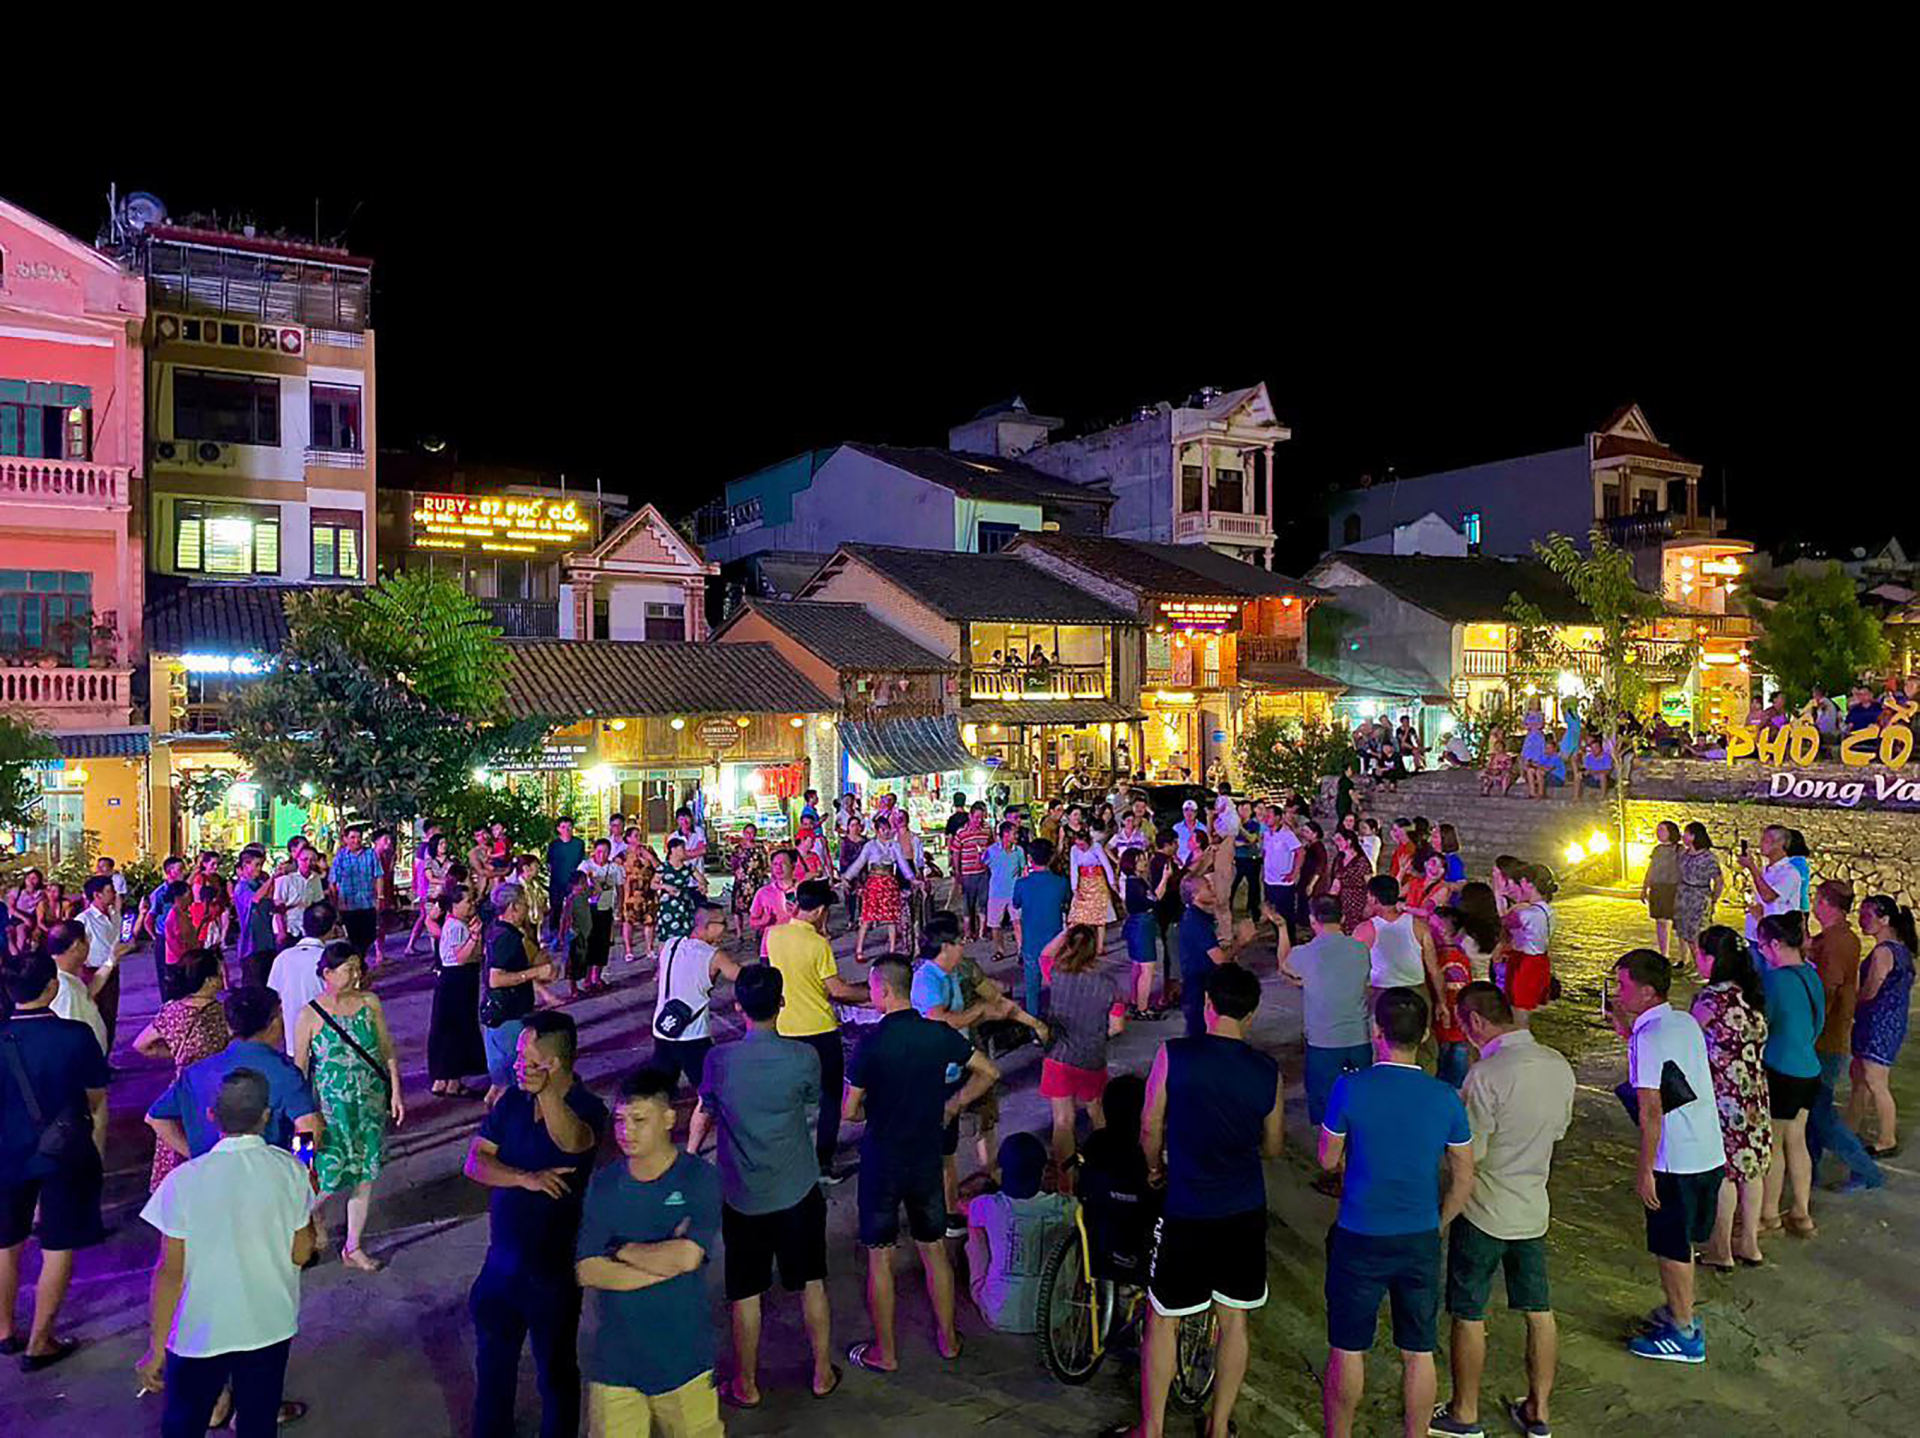 Từng nhóm du khách và người dân giao lưu múa hát trong khu phố cổ Đồng Văn.